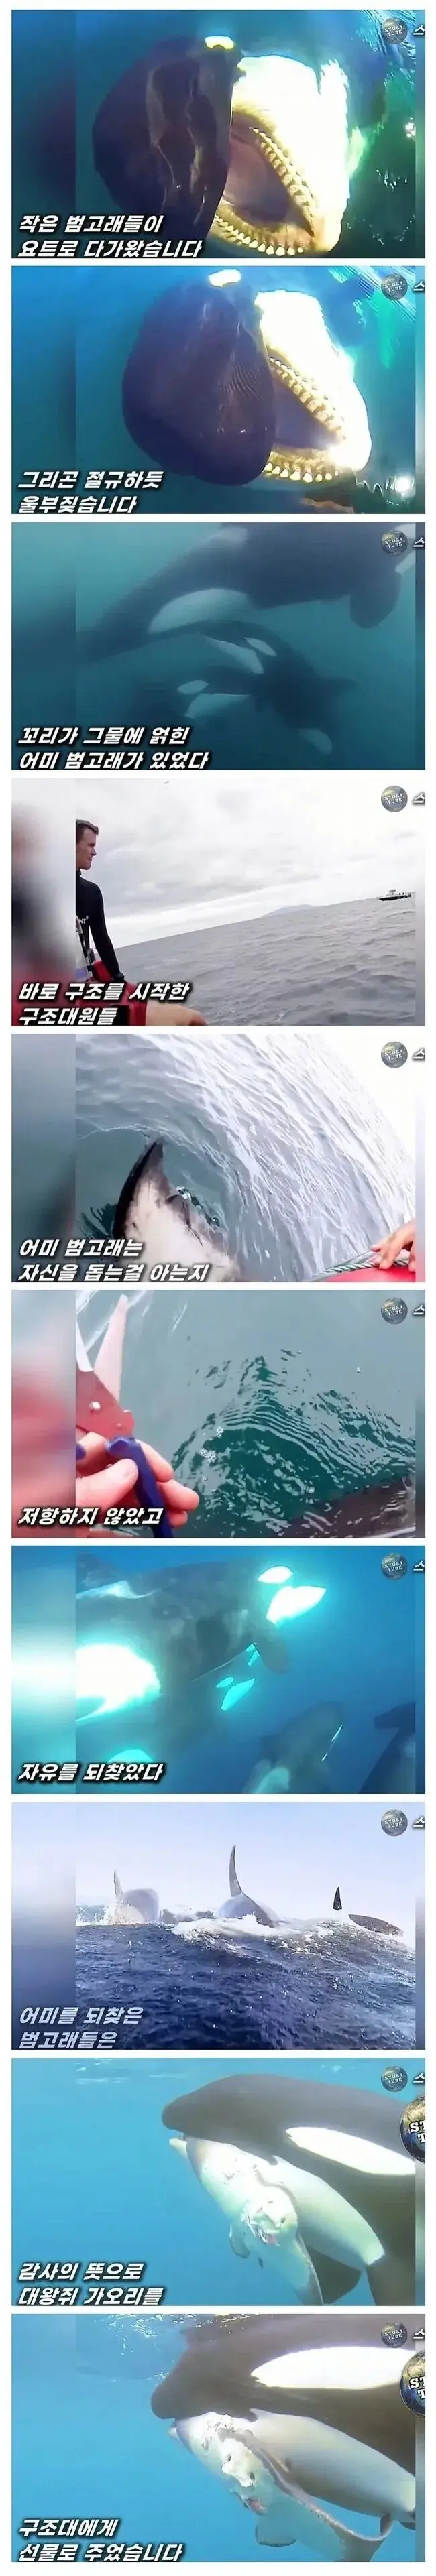 도움받은 범고래의 보답 | mbong.kr 엠봉